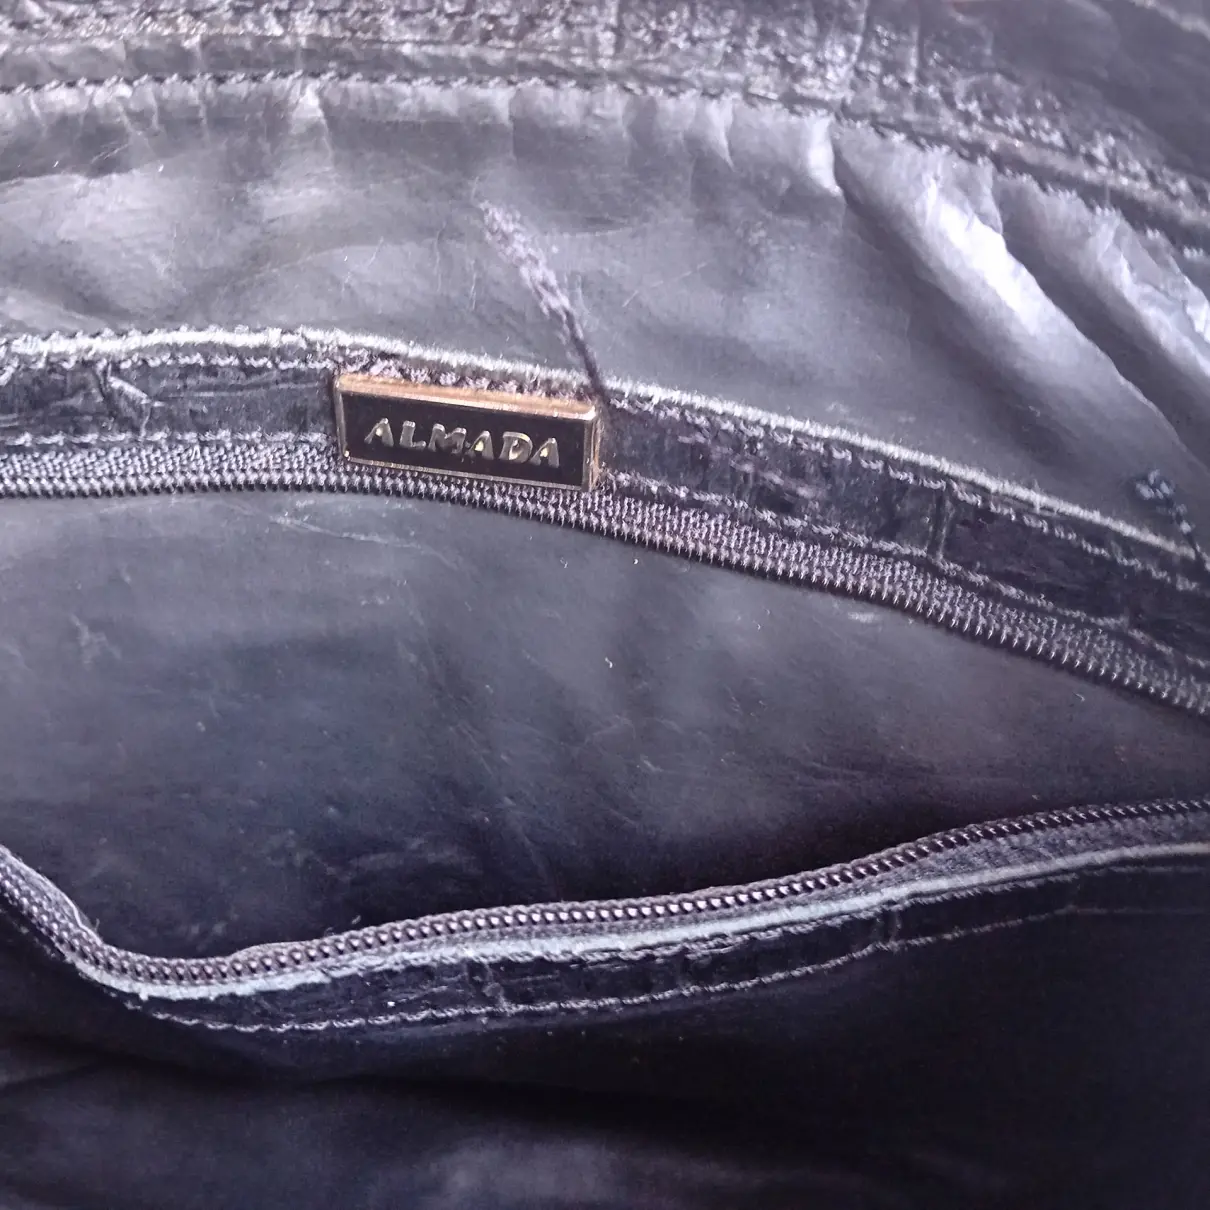 Buy Almada Label Crocodile handbag online